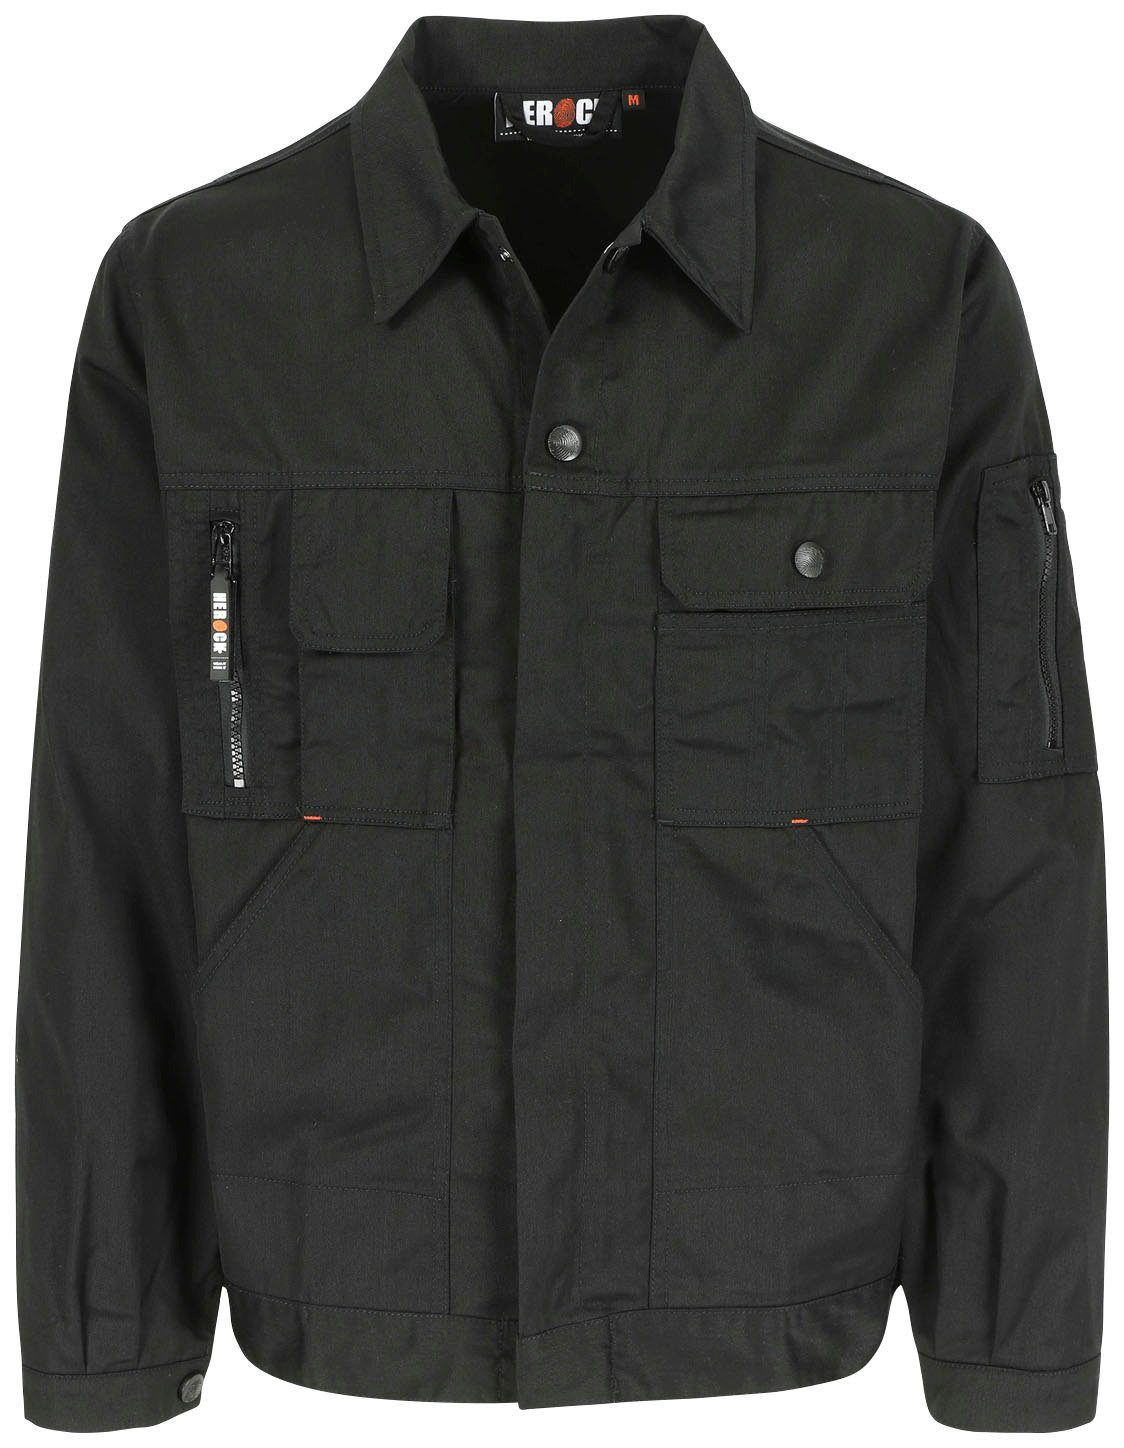 Herock Arbeitsjacke Aton Jacke Wasserabweisende Jacke mit vielen Taschen  und einstellbare Bündchen | Gerade Hosen